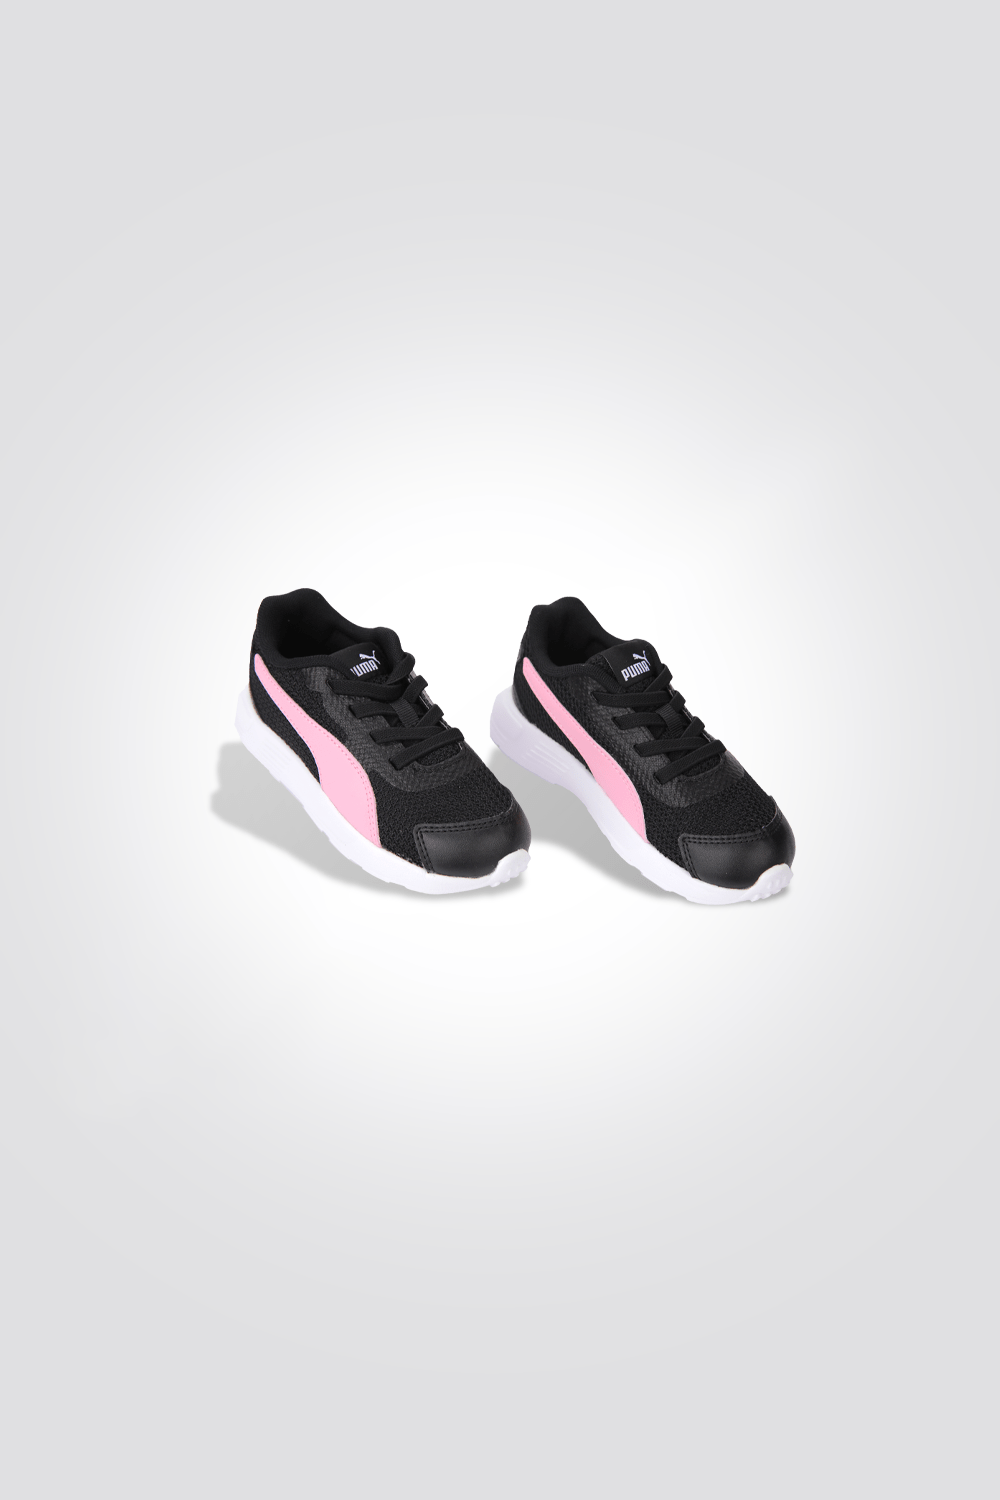 PUMA - נעלי ספורט לילדות Taper AC Inf Pu בצבע ורוד ושחור - MASHBIR//365